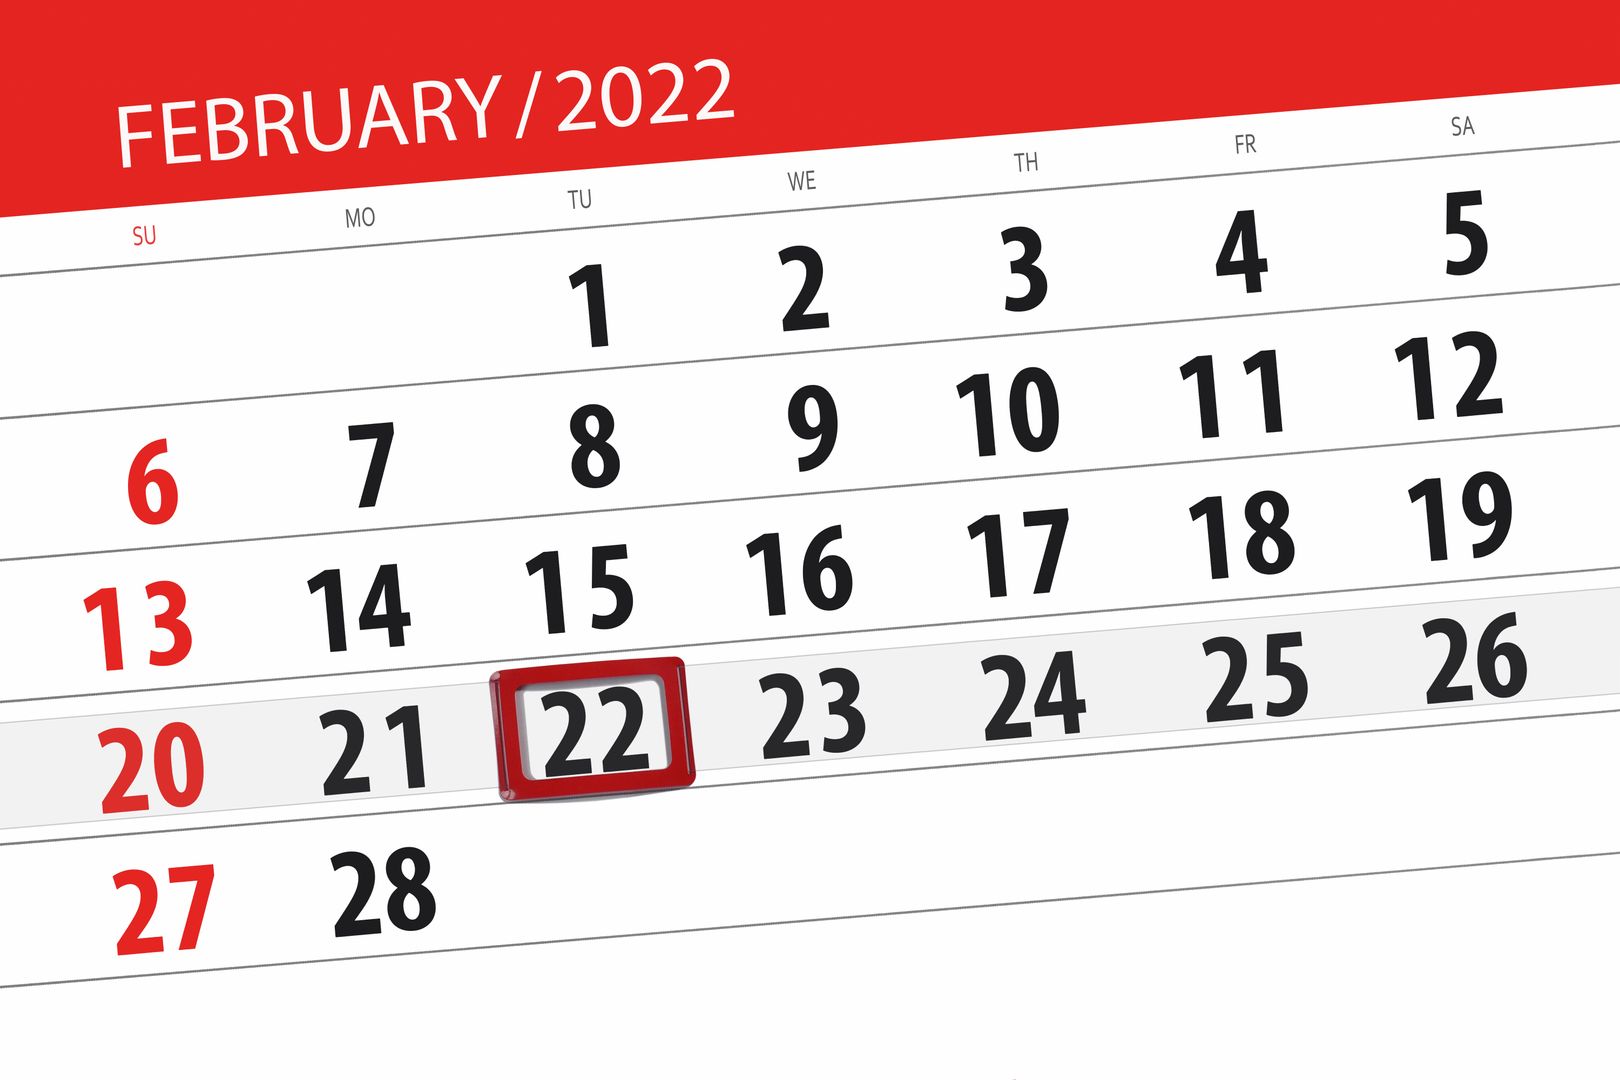 Wtorek 22 lutego. Spójrz w kalendarz. Taki dzień "już się nie powtórzy"